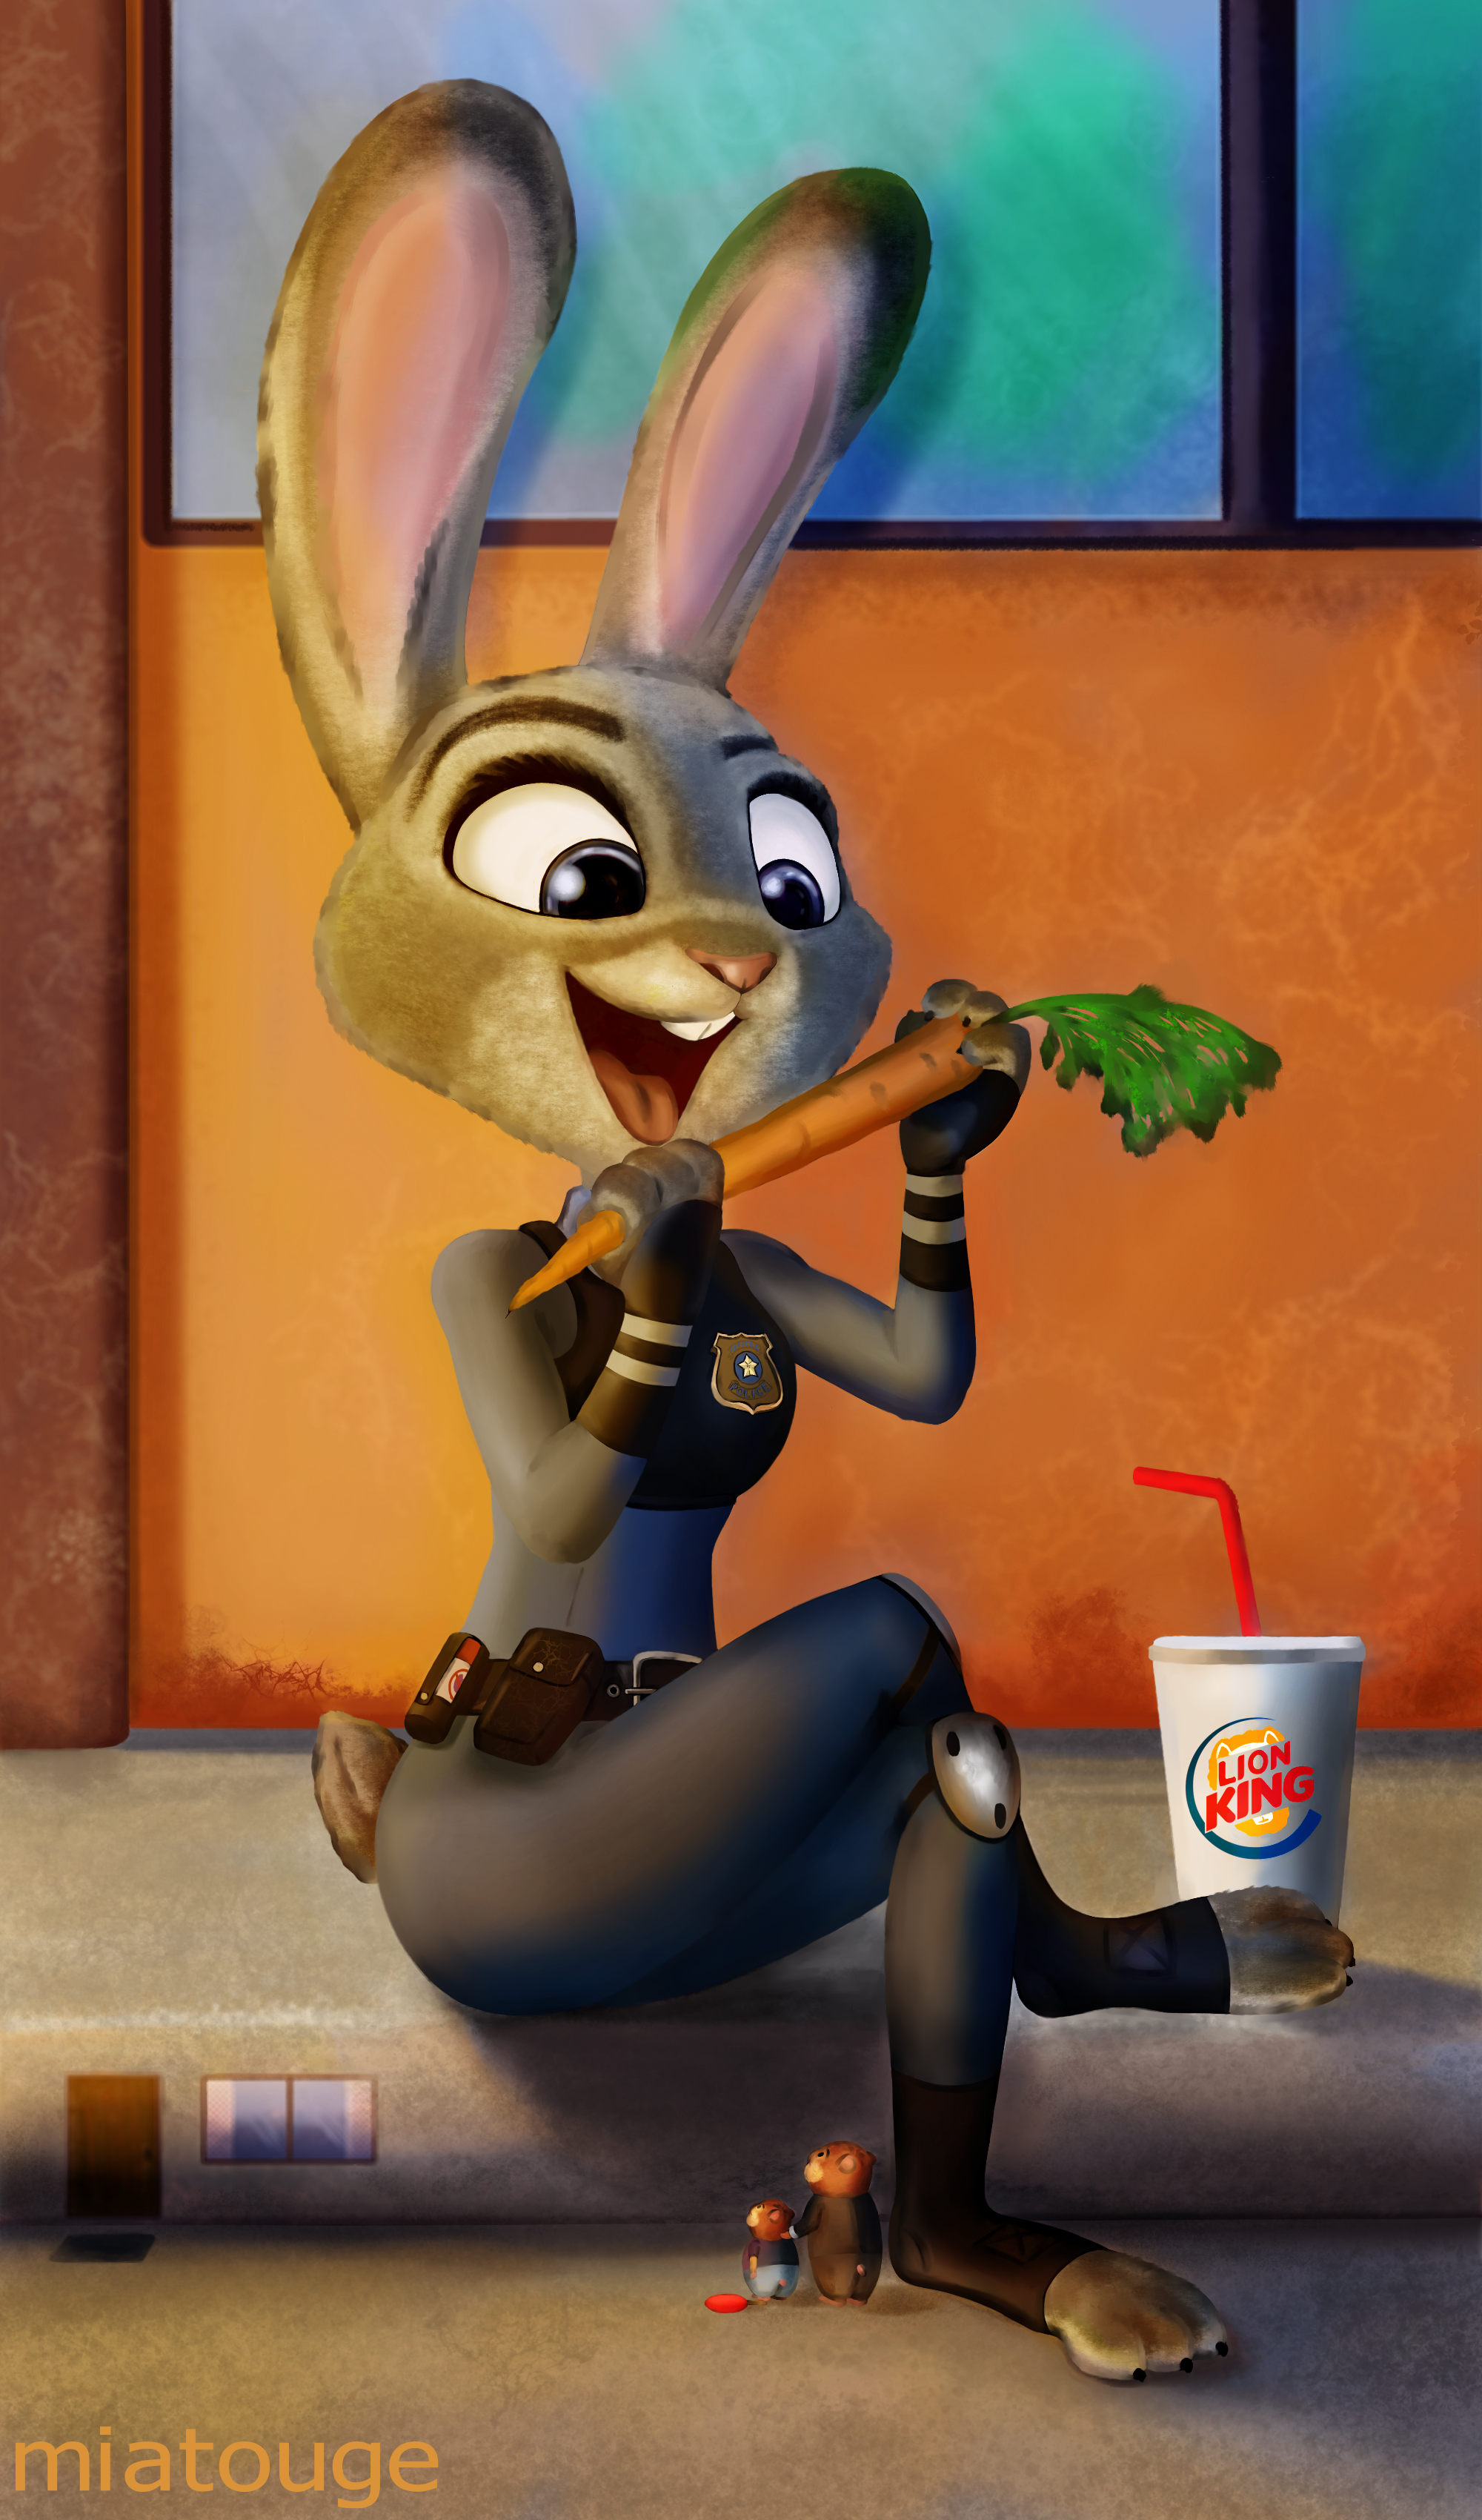 Judy by Miatouge. 